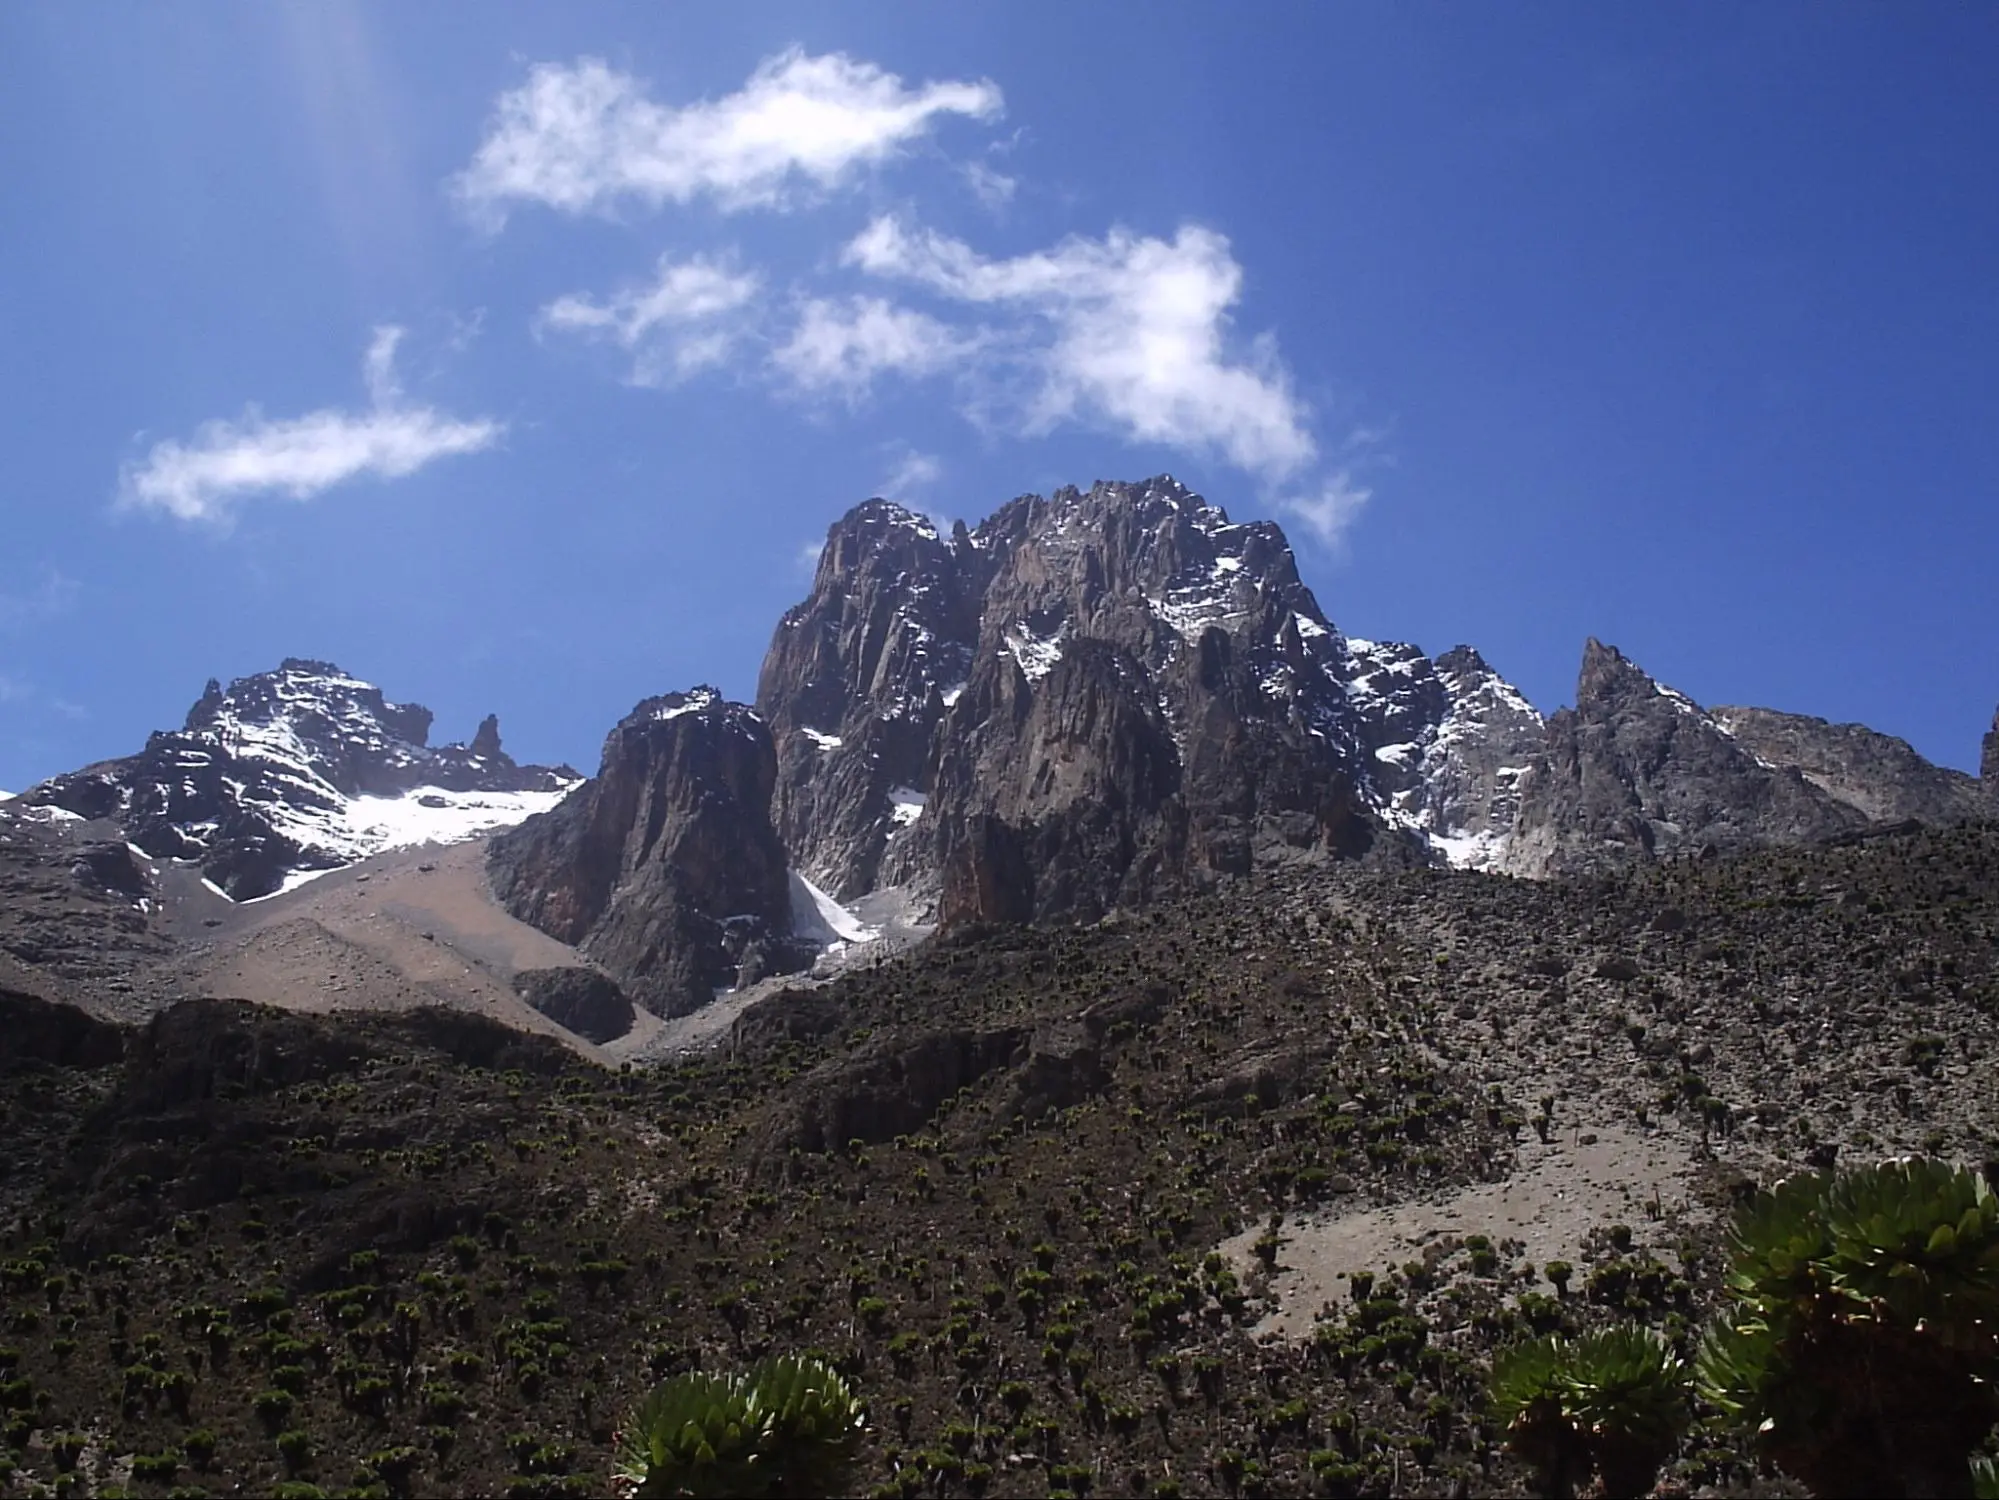 Mount Kenya National Park - Things to see in Kenya